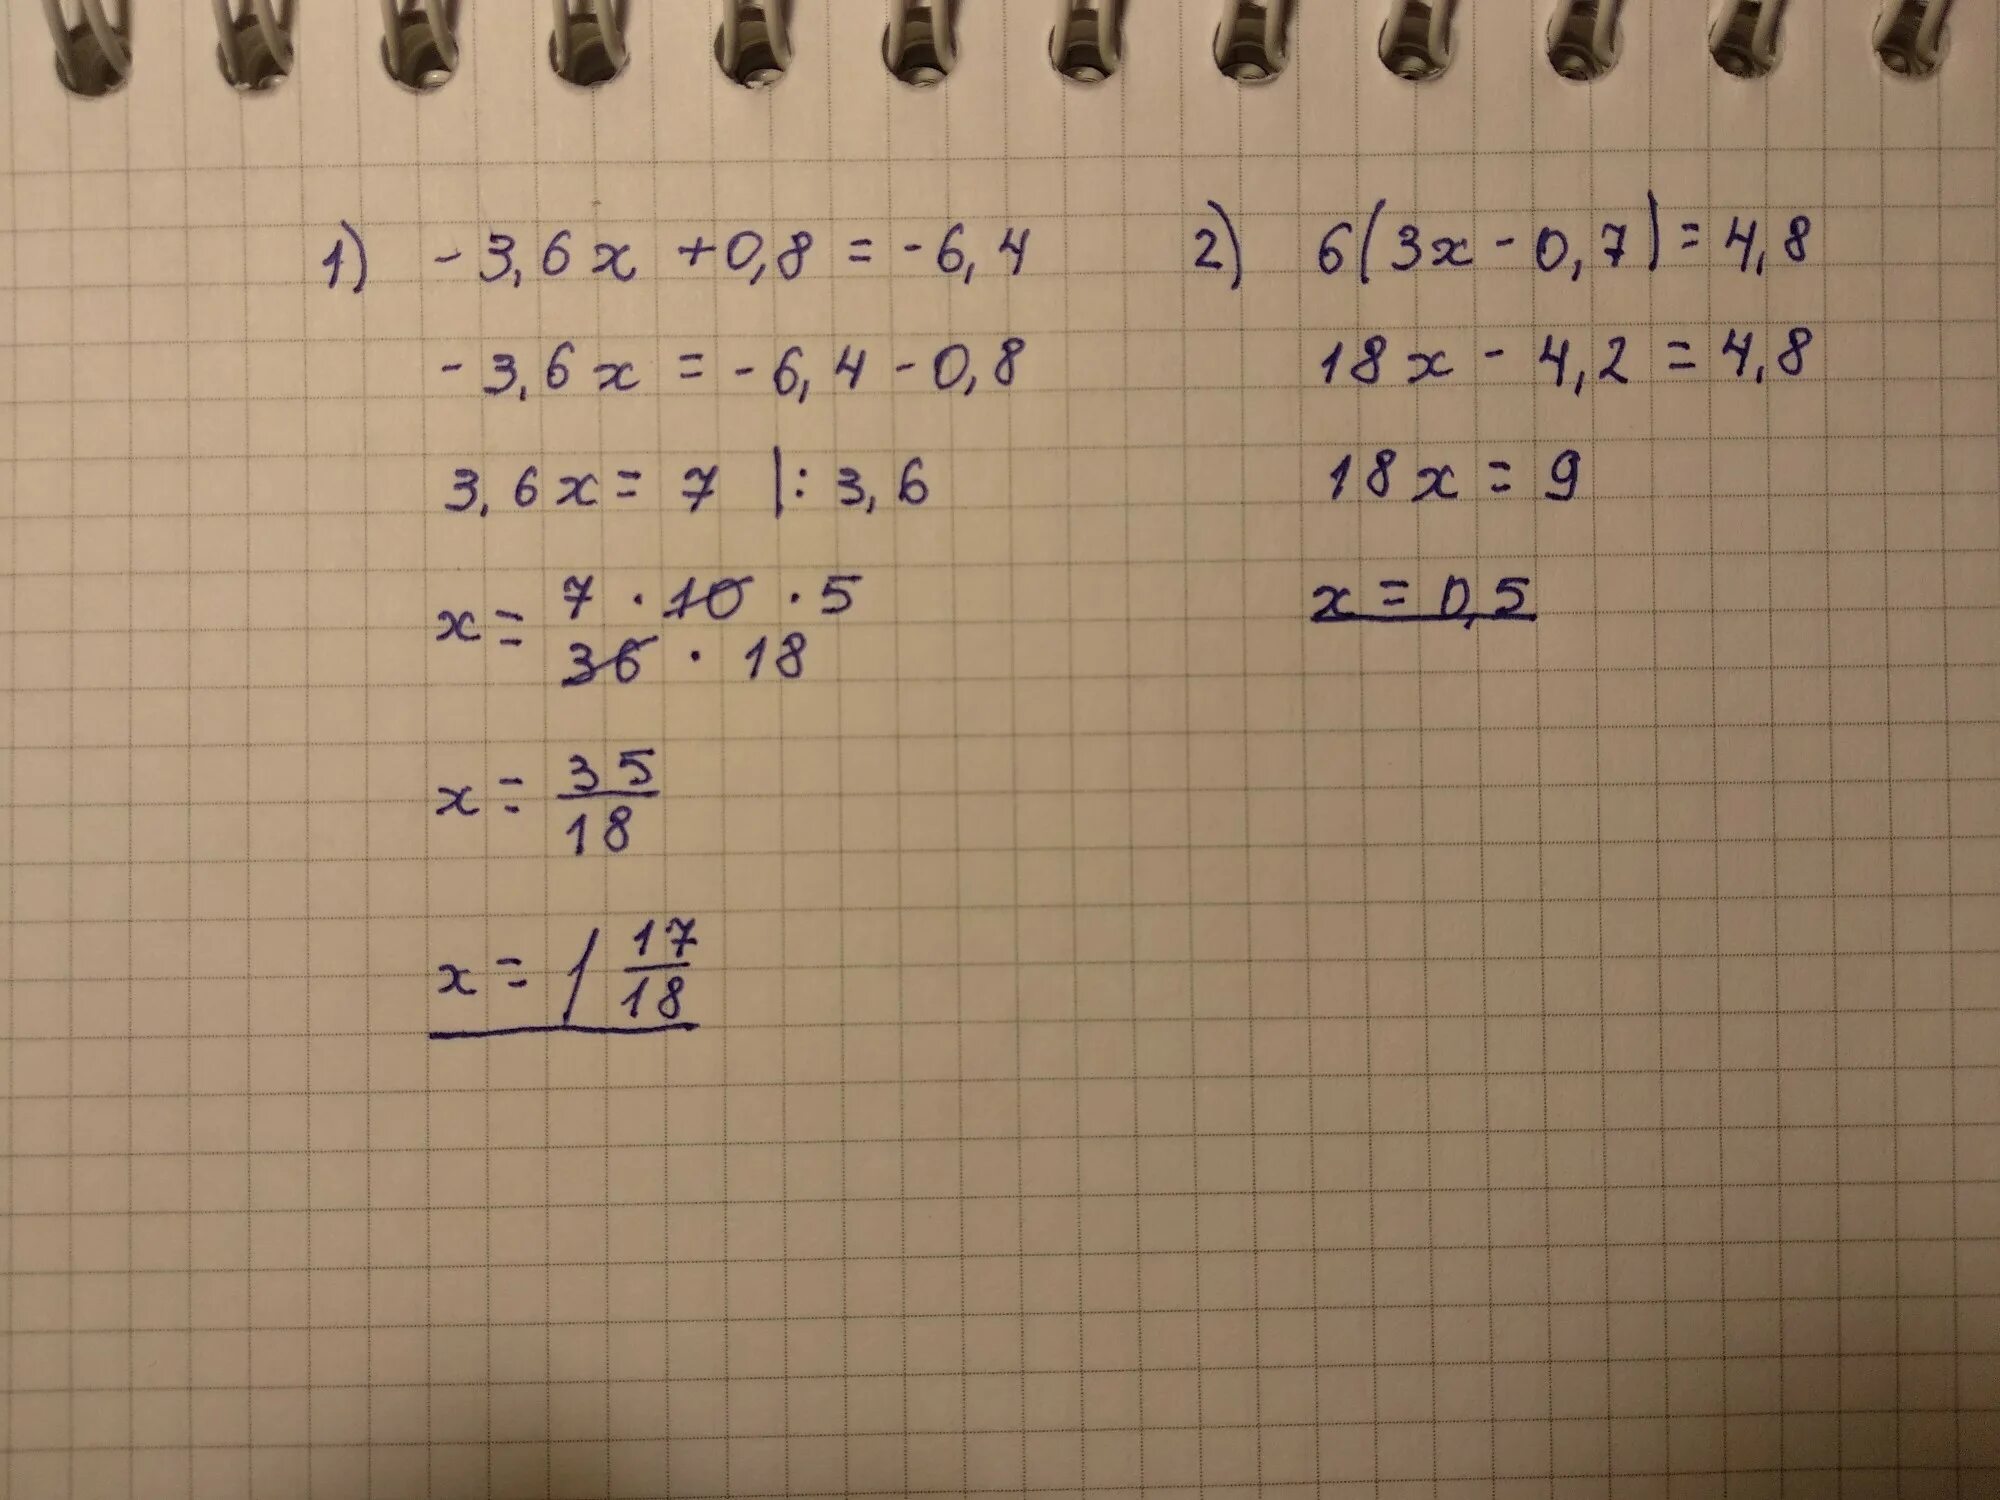 {8-Х>4 4+6х<1. (Х + 3)(2х – 6)(3х + 4) ≥ 0.. 3х - 6 = 0. 2.6Х3.0Х1.8.